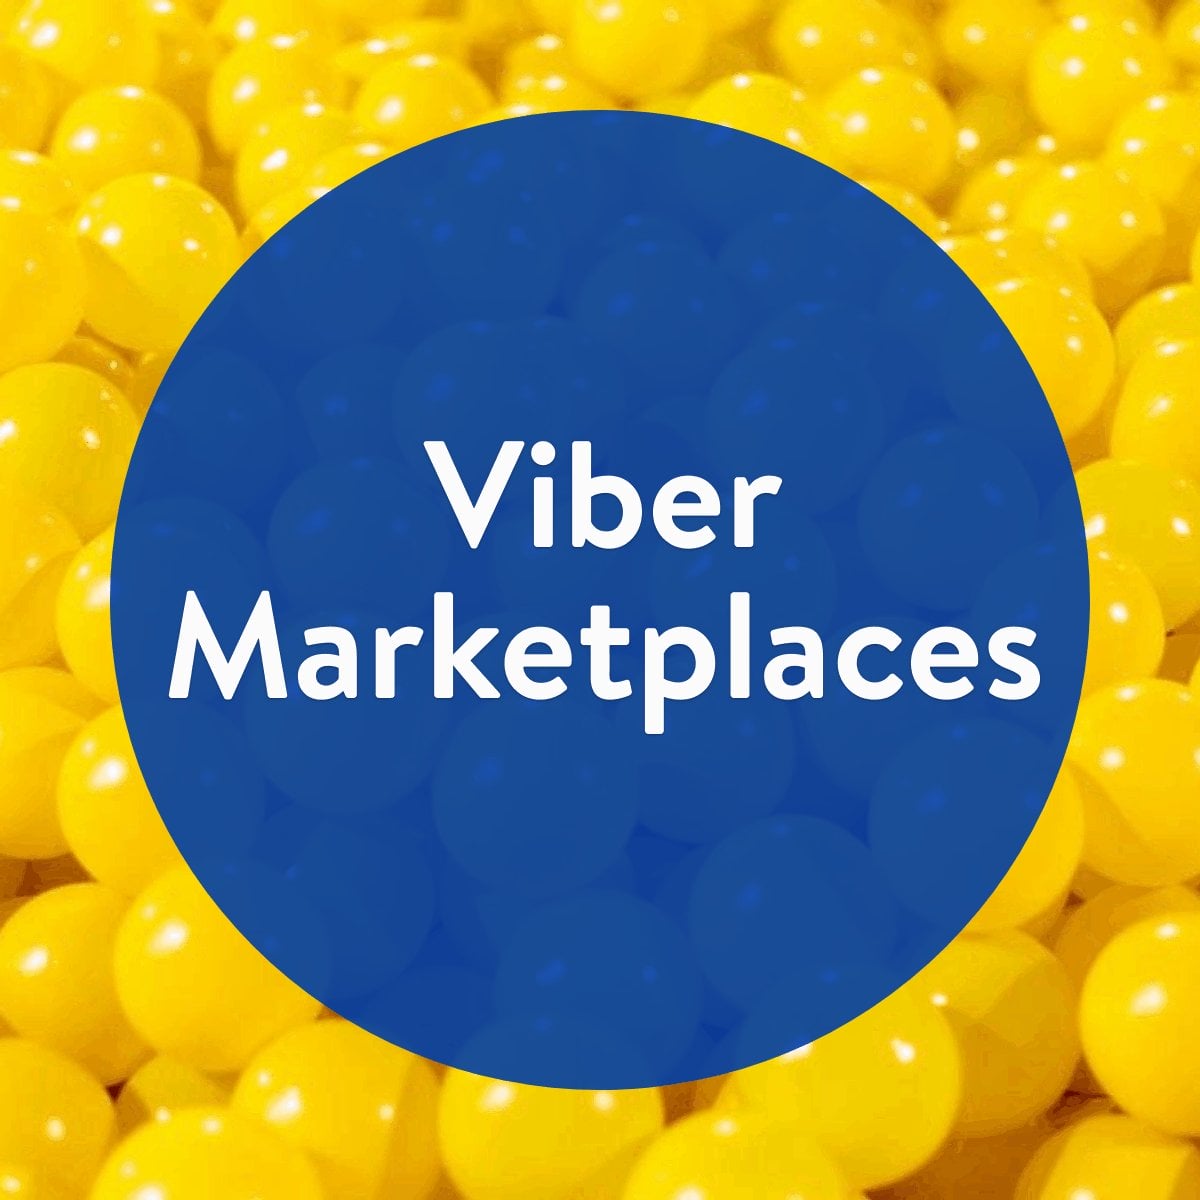 Viber Marketplaces